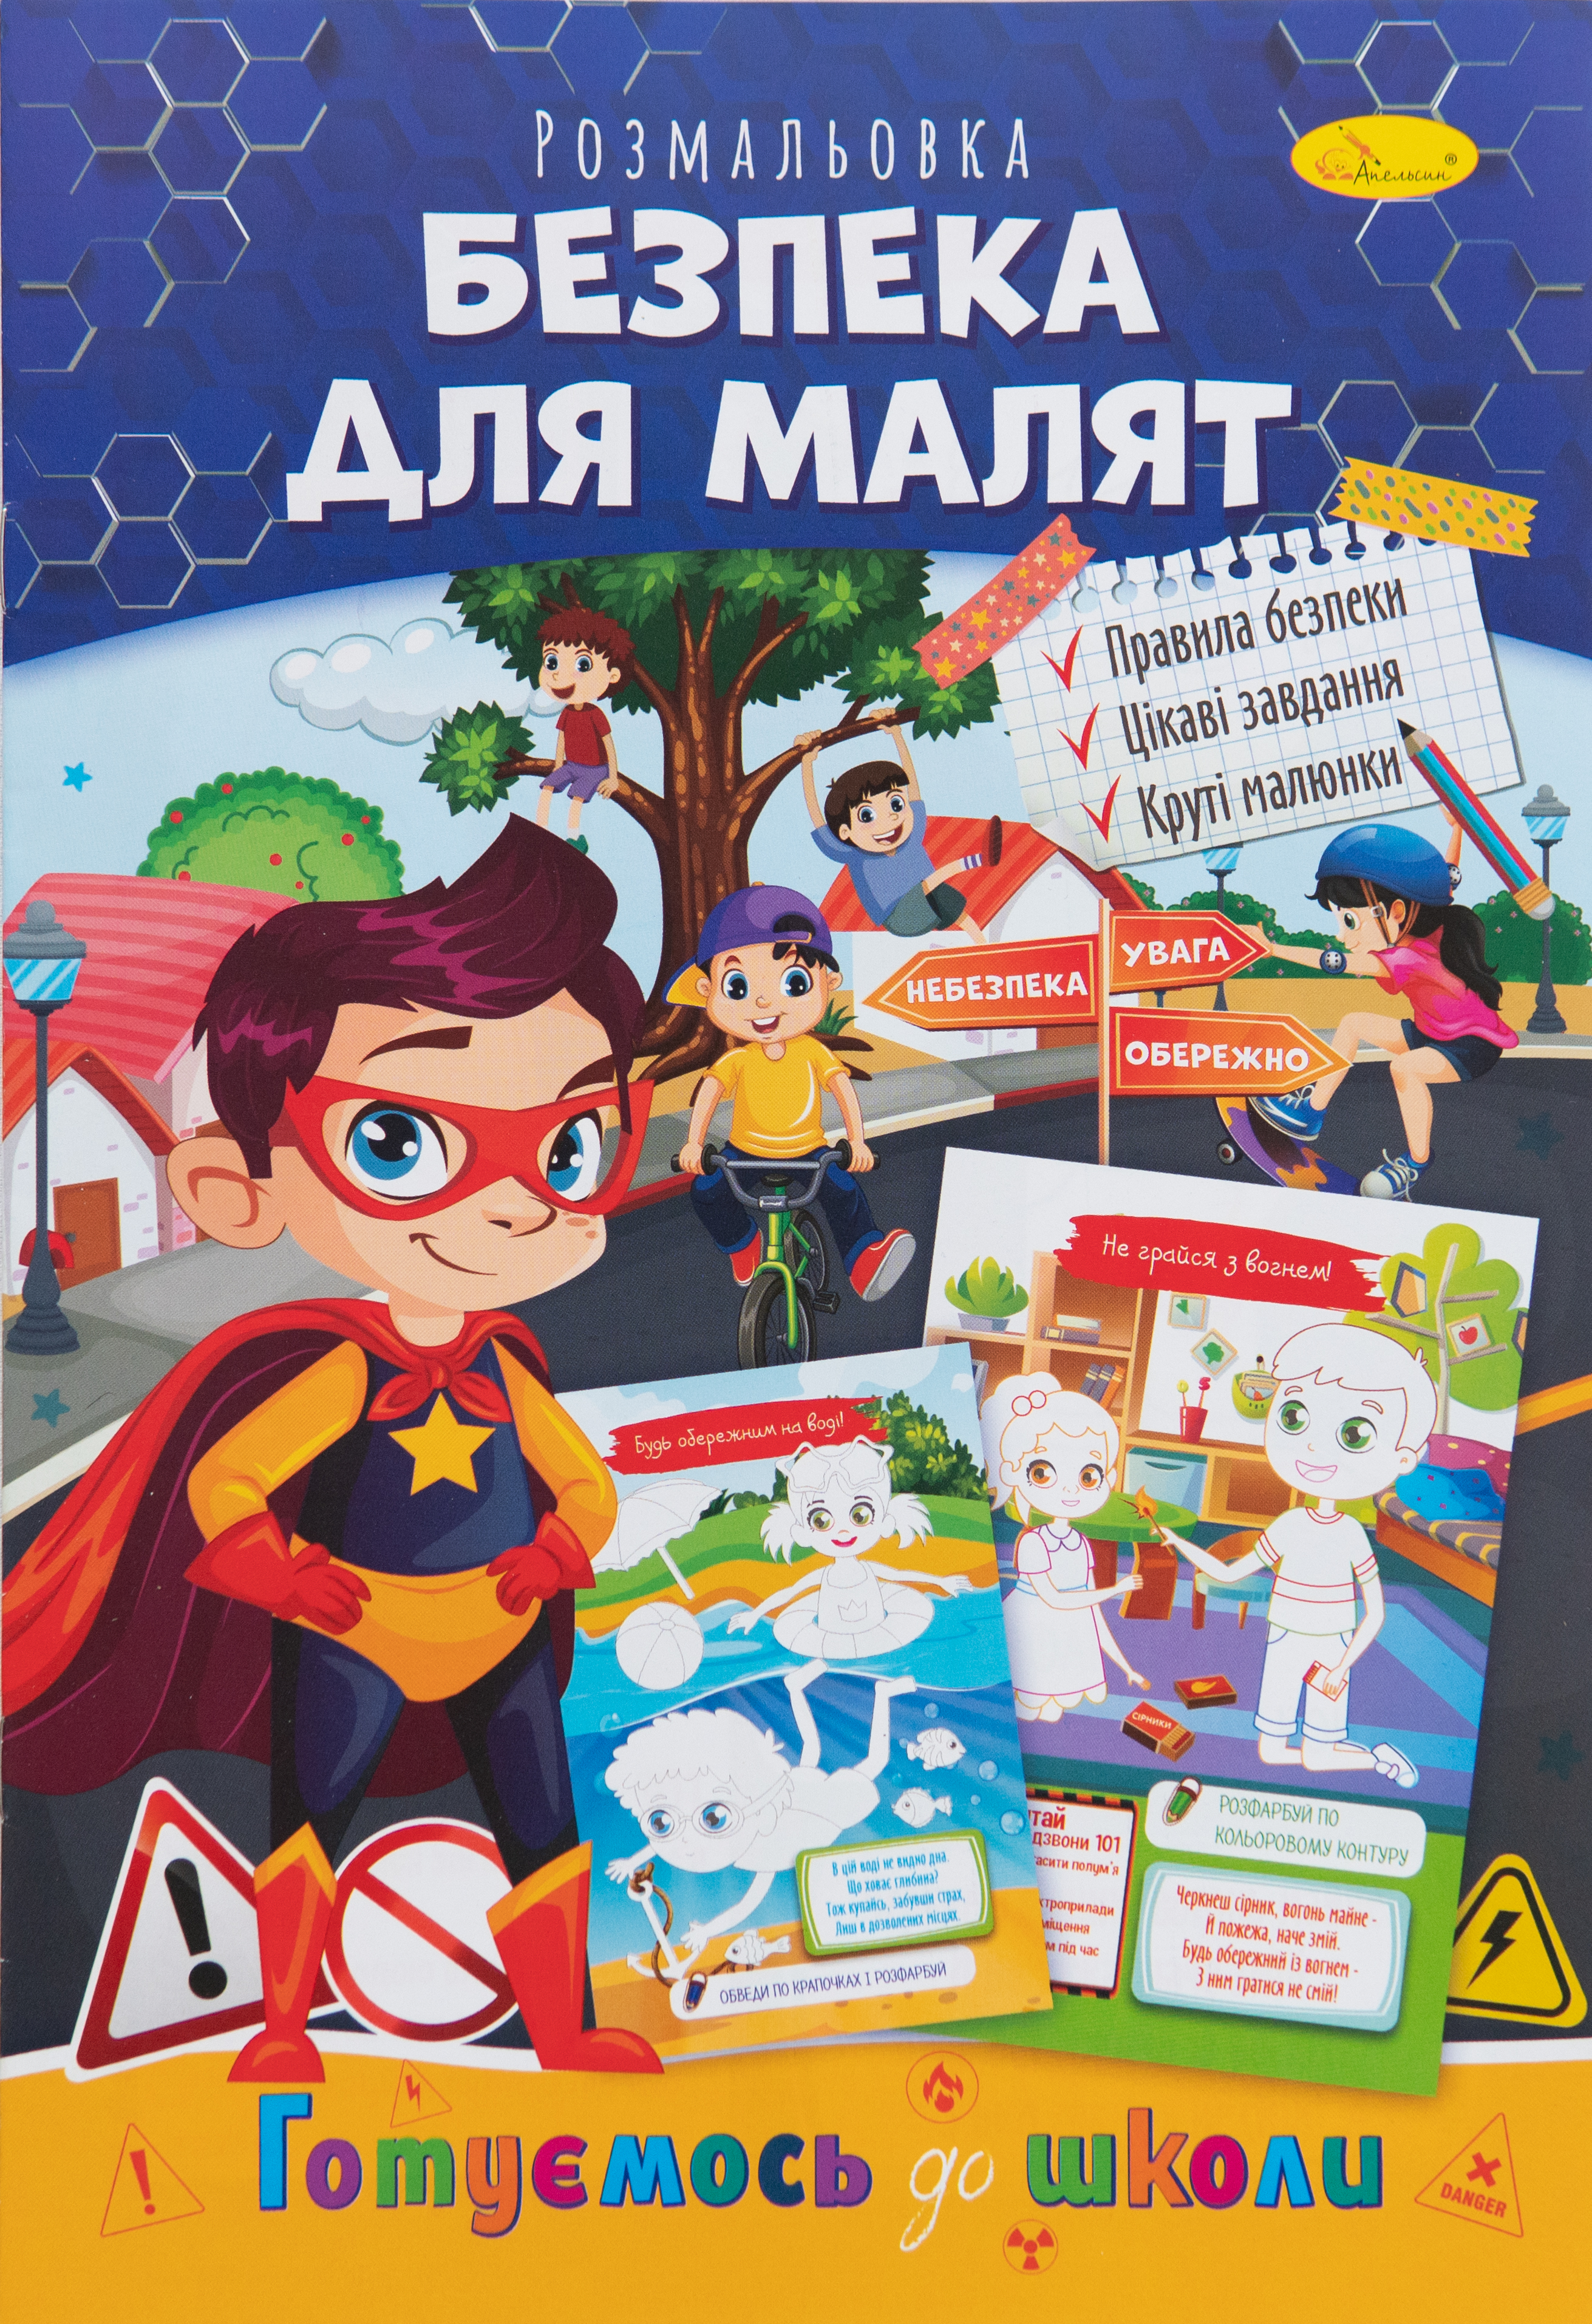 Ausmalbuch Sicherheit für Kleinkinder - Vorbereitung auf die Schule/Ausmalbuch Sicherheit für Kleinkinder - Vorbereitung auf die Schule